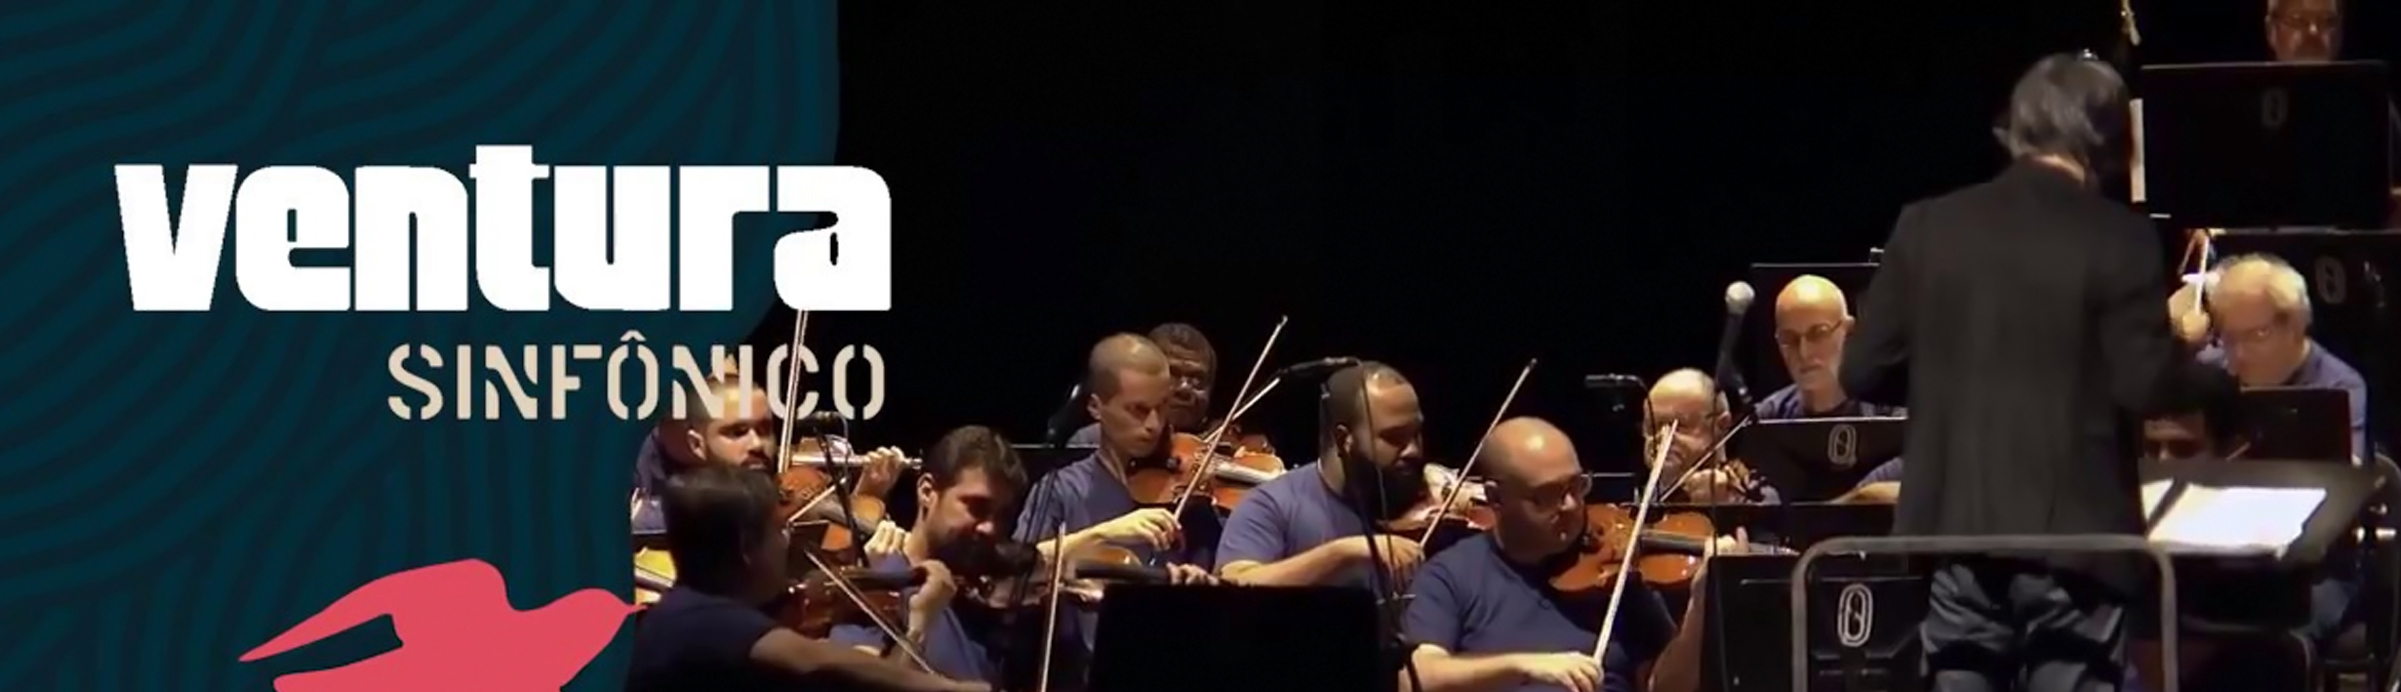 Los Hermanos renascem eruditos pela Orquestra Petrobrás Sinfônica